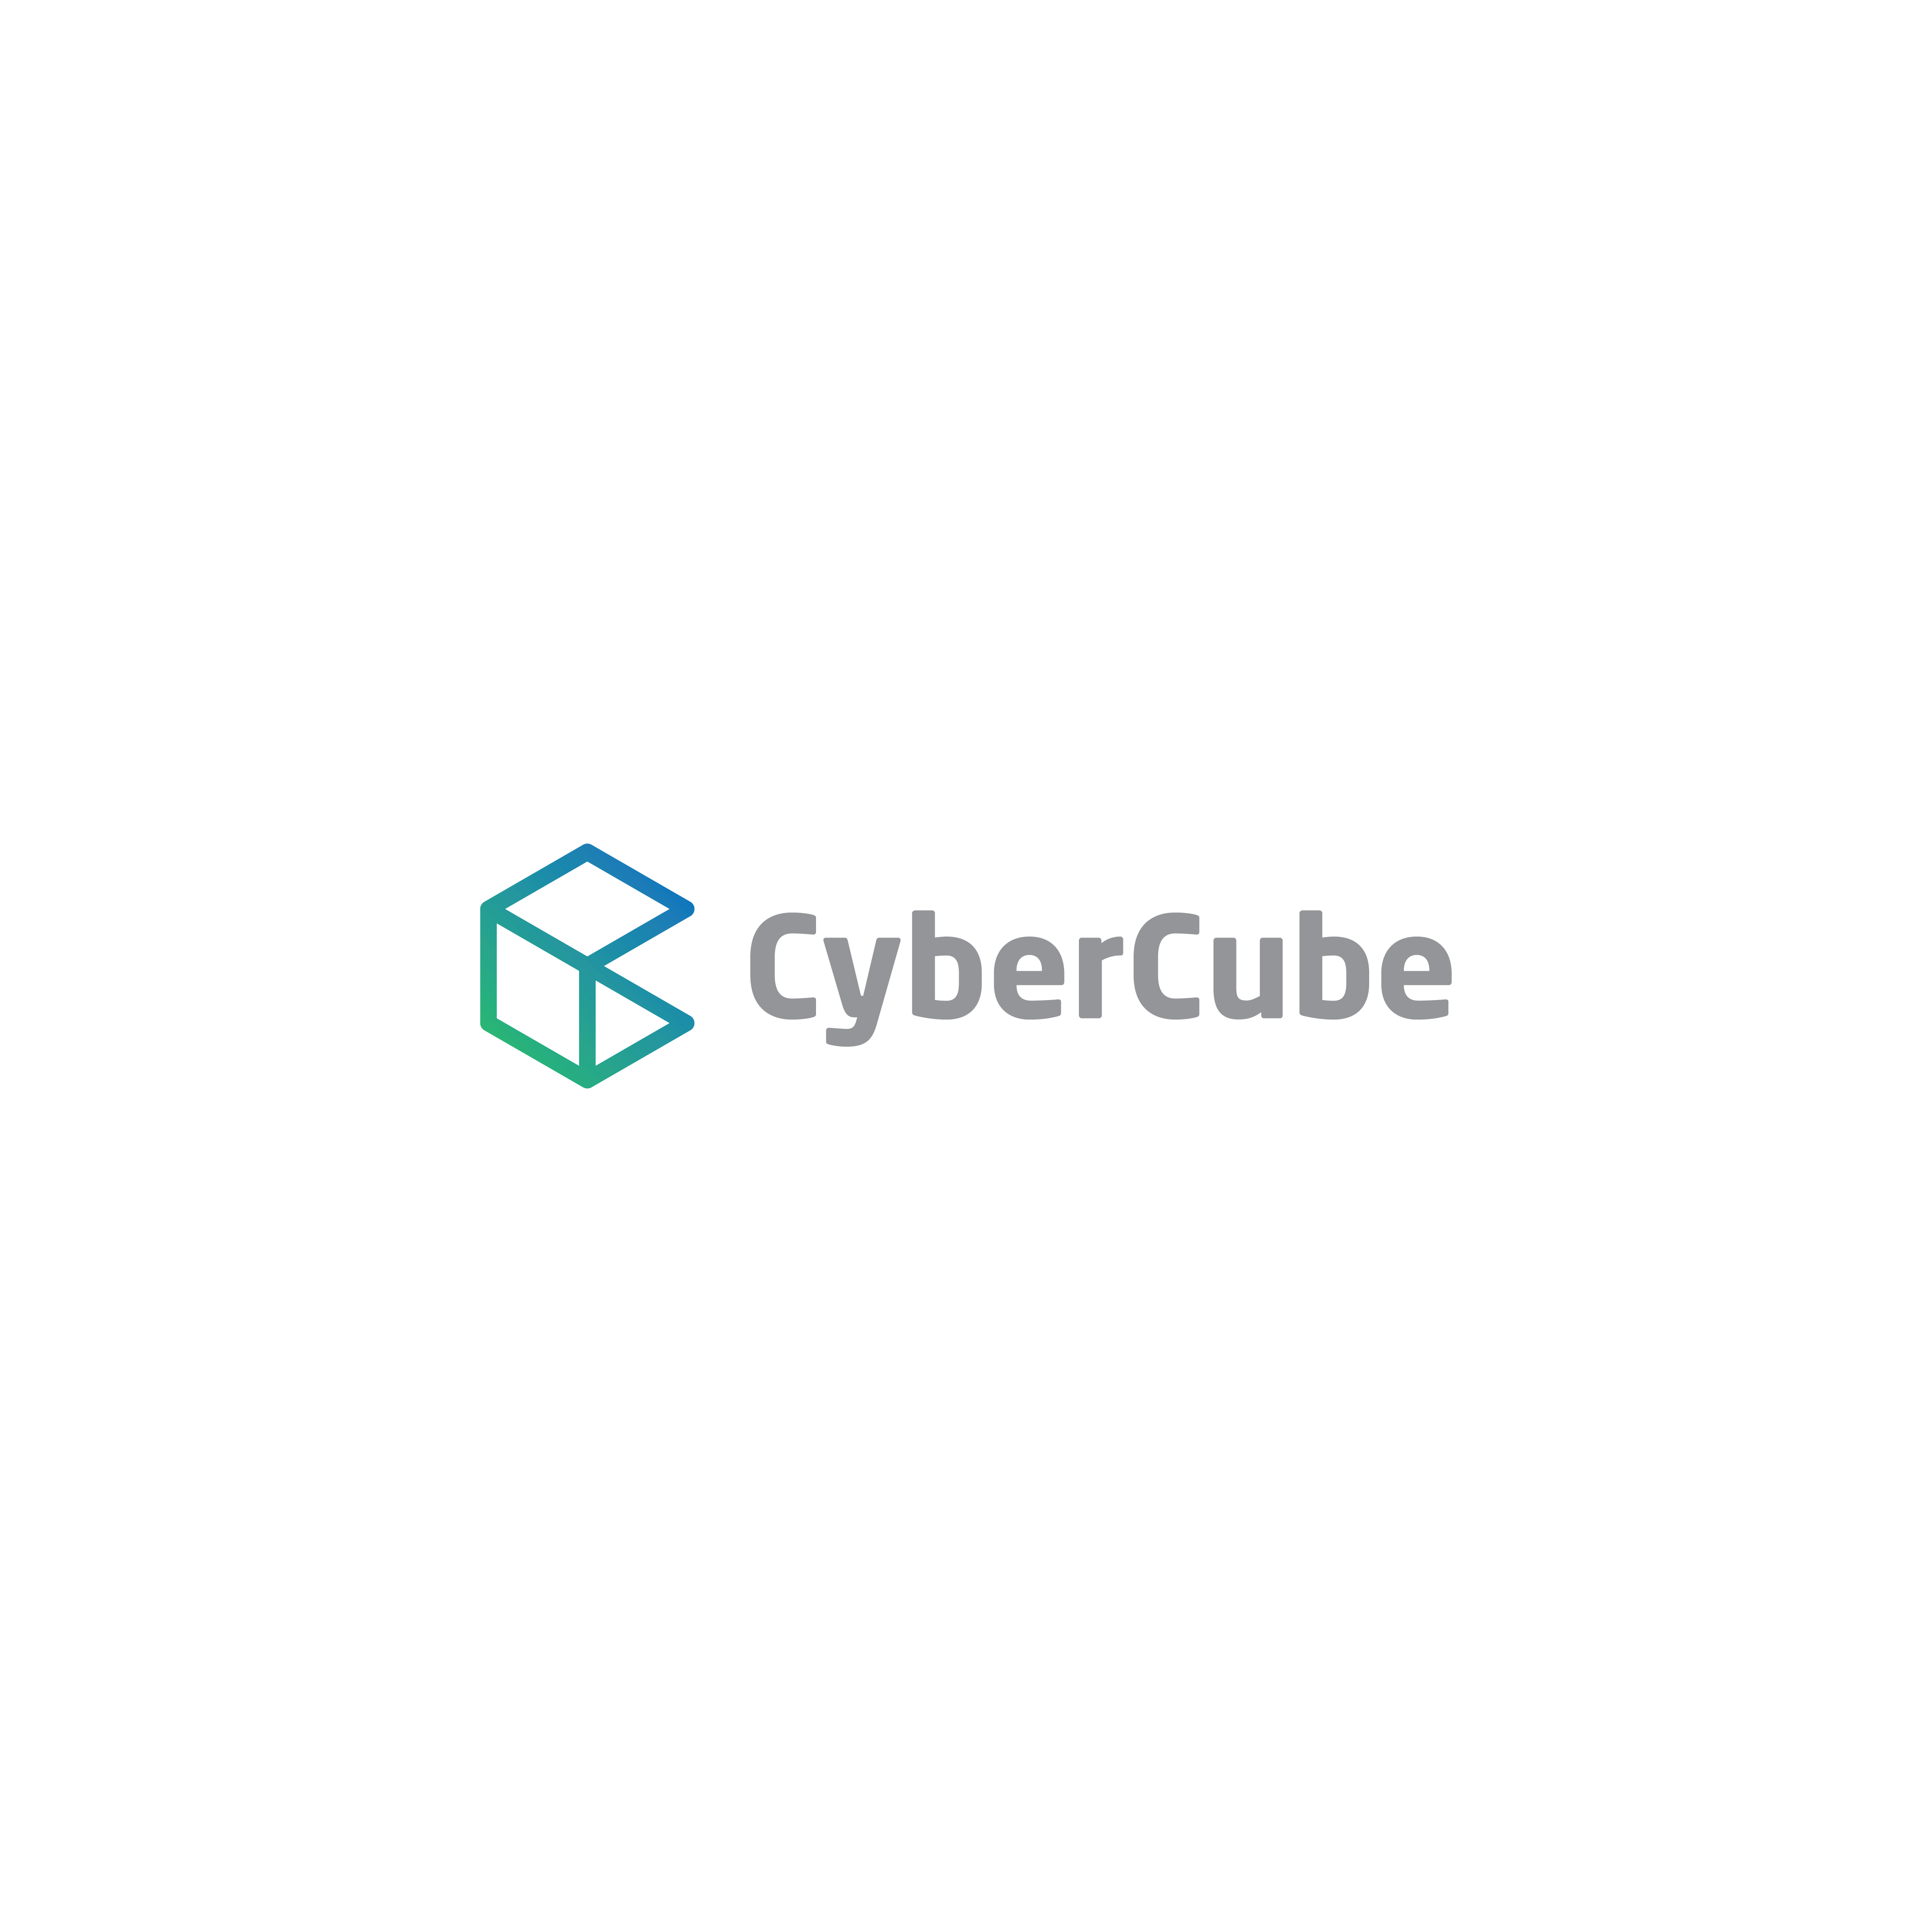 CyberCube